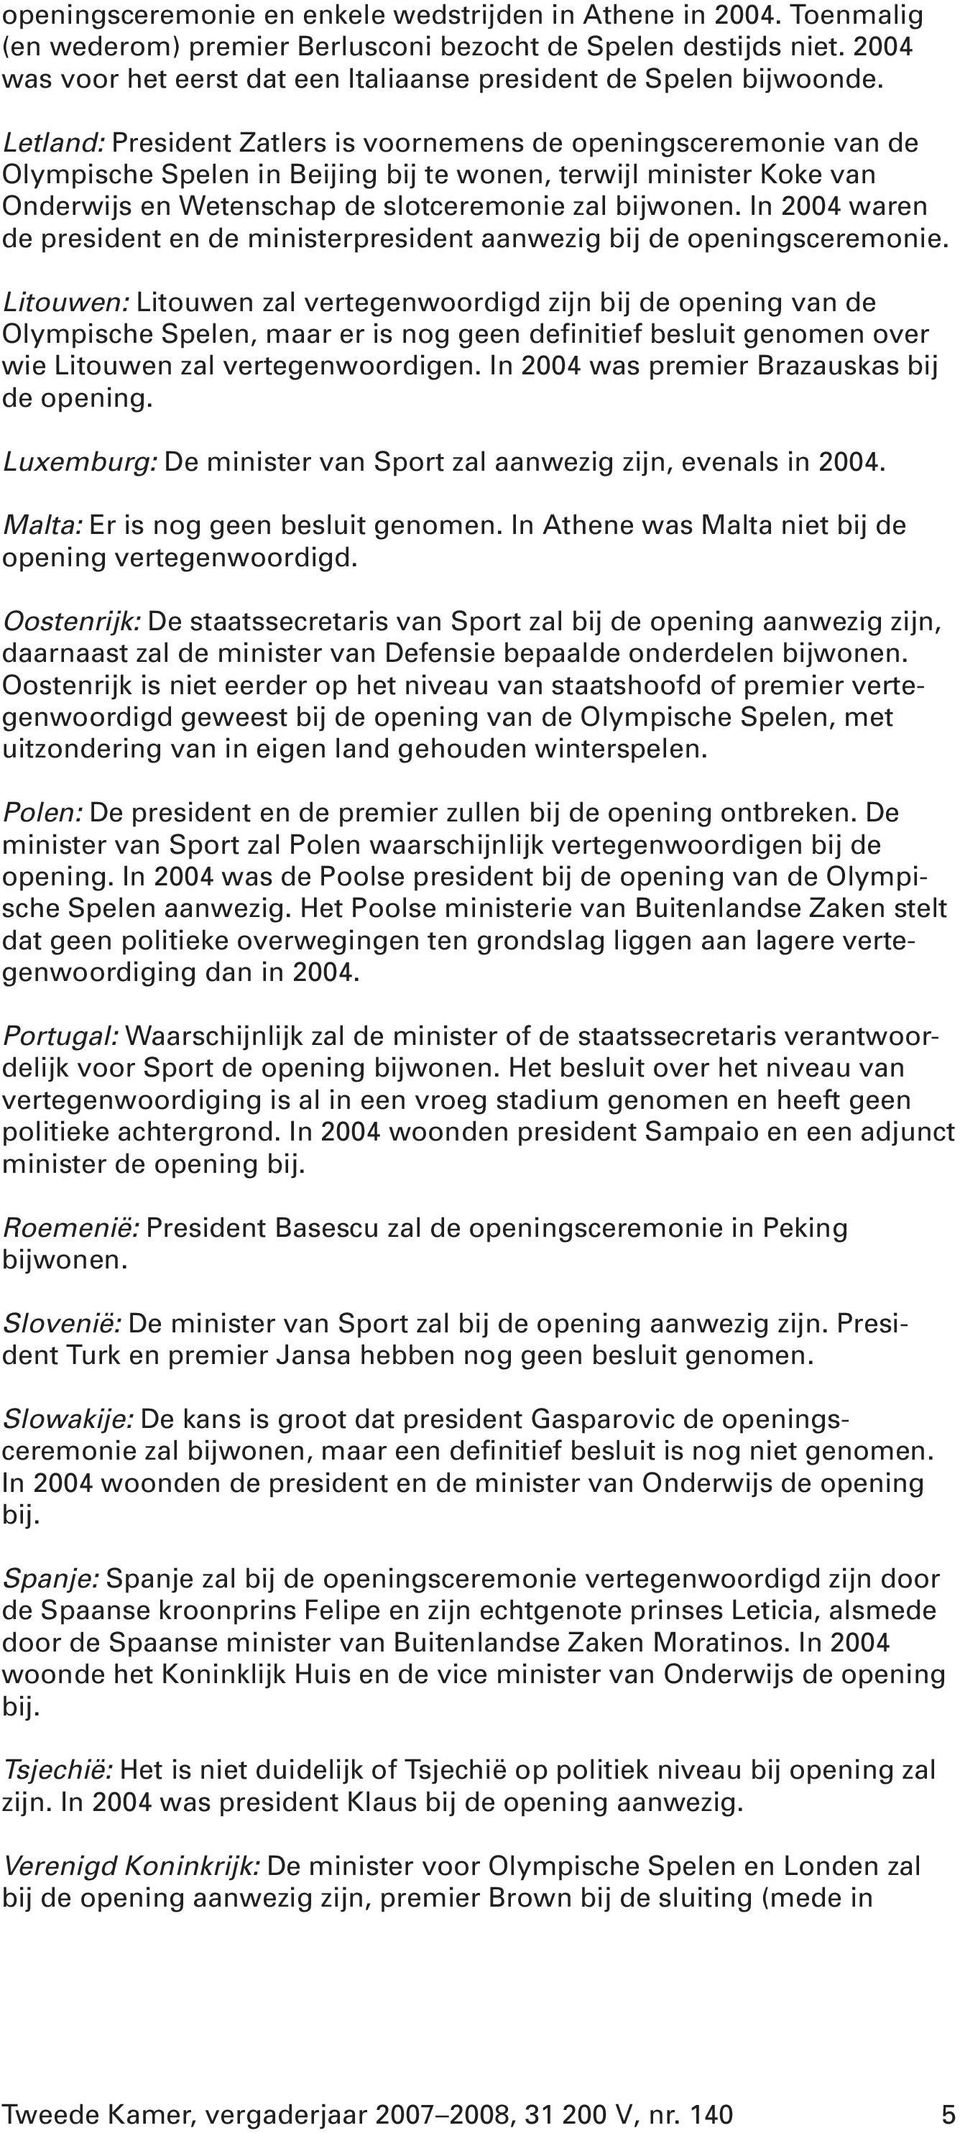 Letland: President Zatlers is voornemens de openingsceremonie van de Olympische Spelen in Beijing bij te wonen, terwijl minister Koke van Onderwijs en Wetenschap de slotceremonie zal bijwonen.